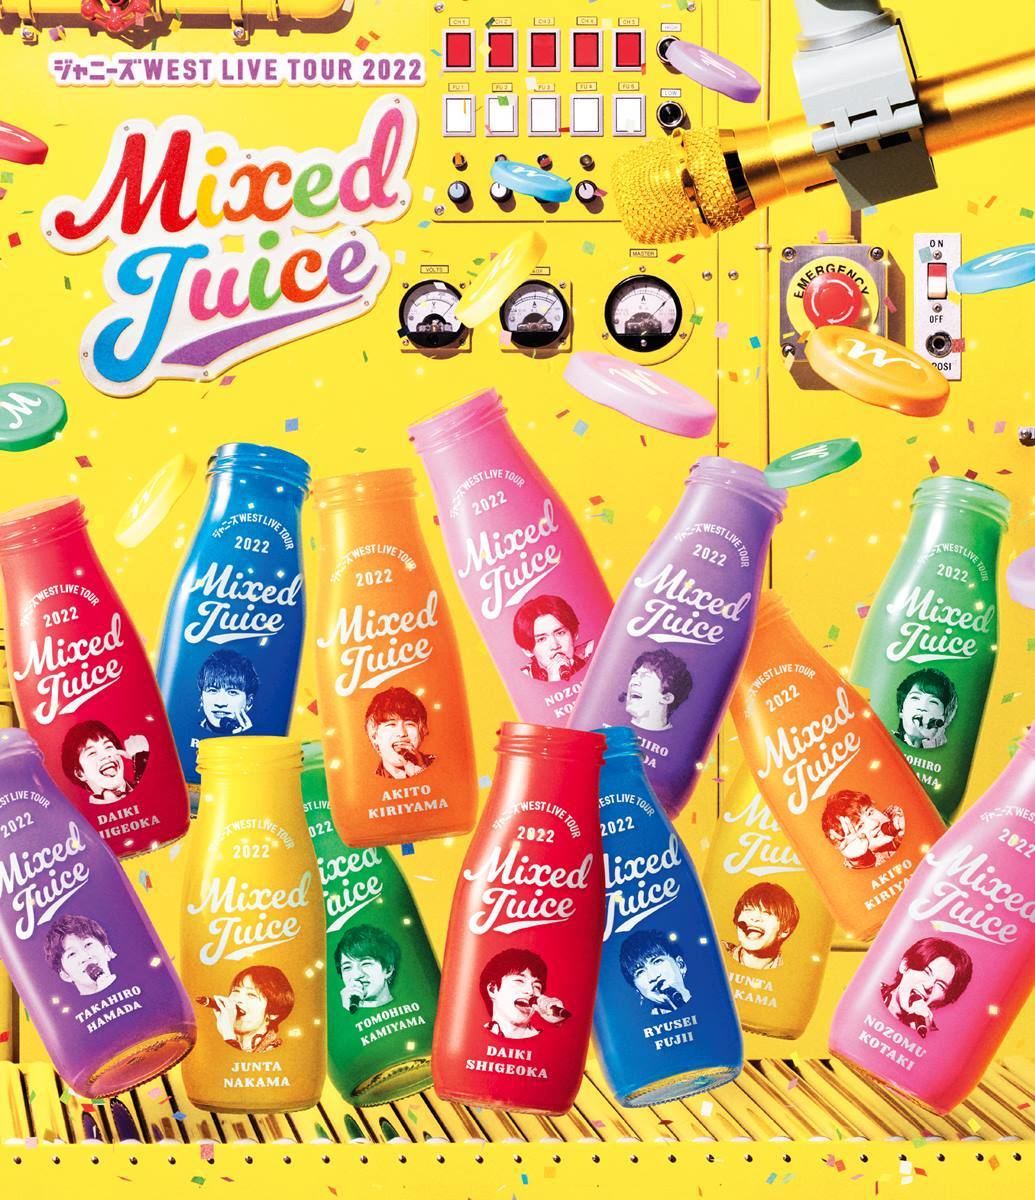 ジャニーズWEST、ライブ「Mixed Juice」円盤化 初回盤は豪華映像特典